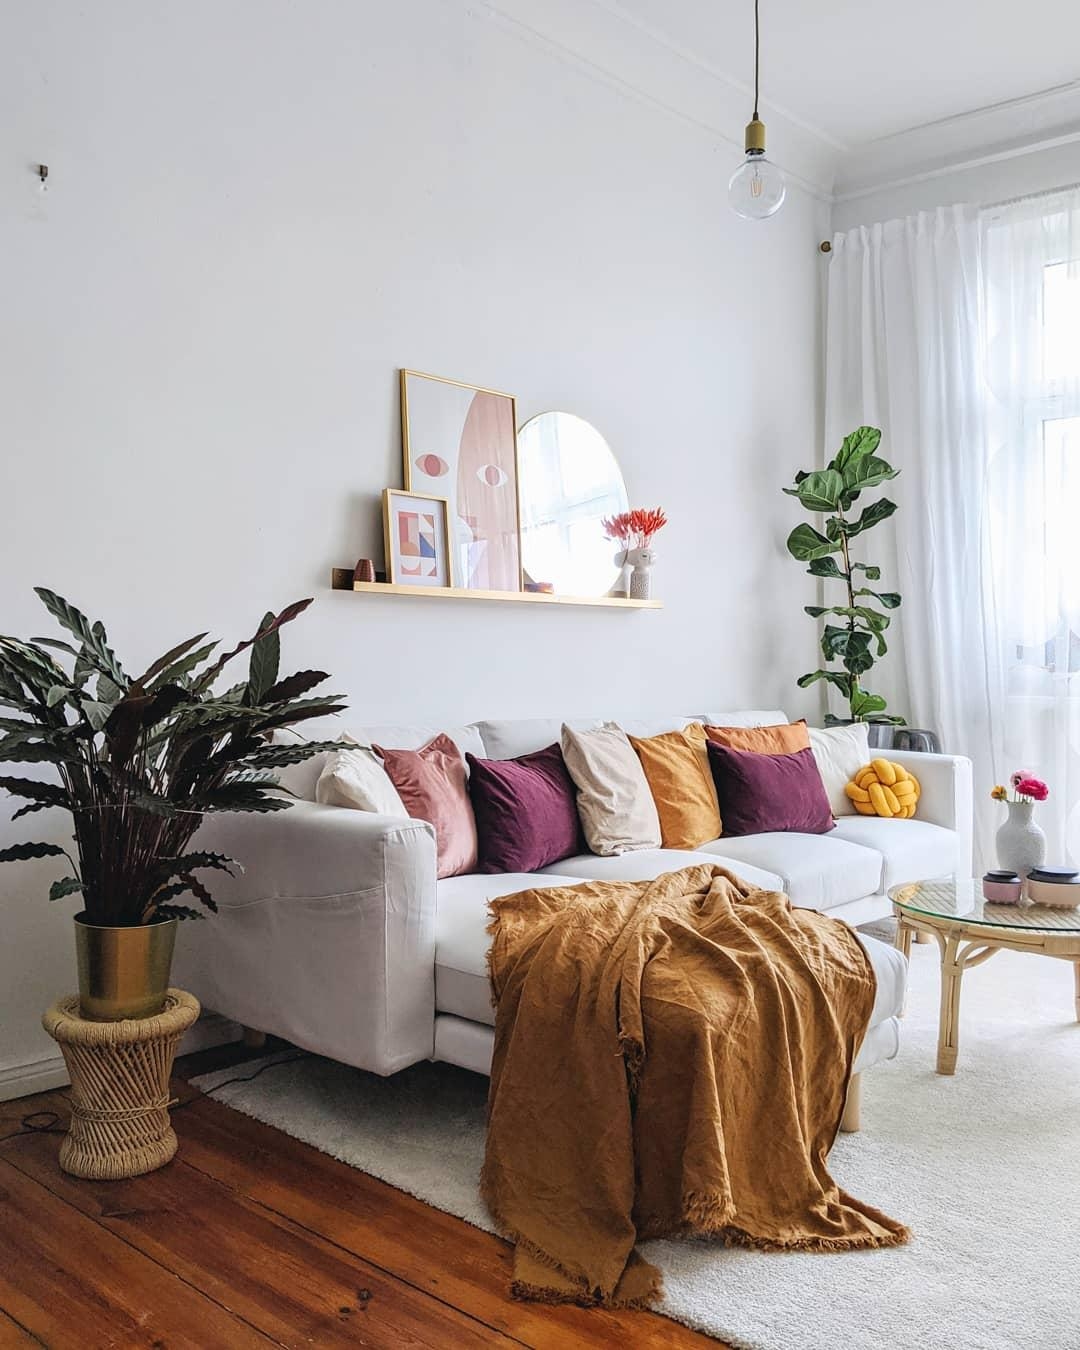 Frische Farben. #wohnzimmer #livingroom #couchstyle #brightside #warmcolours